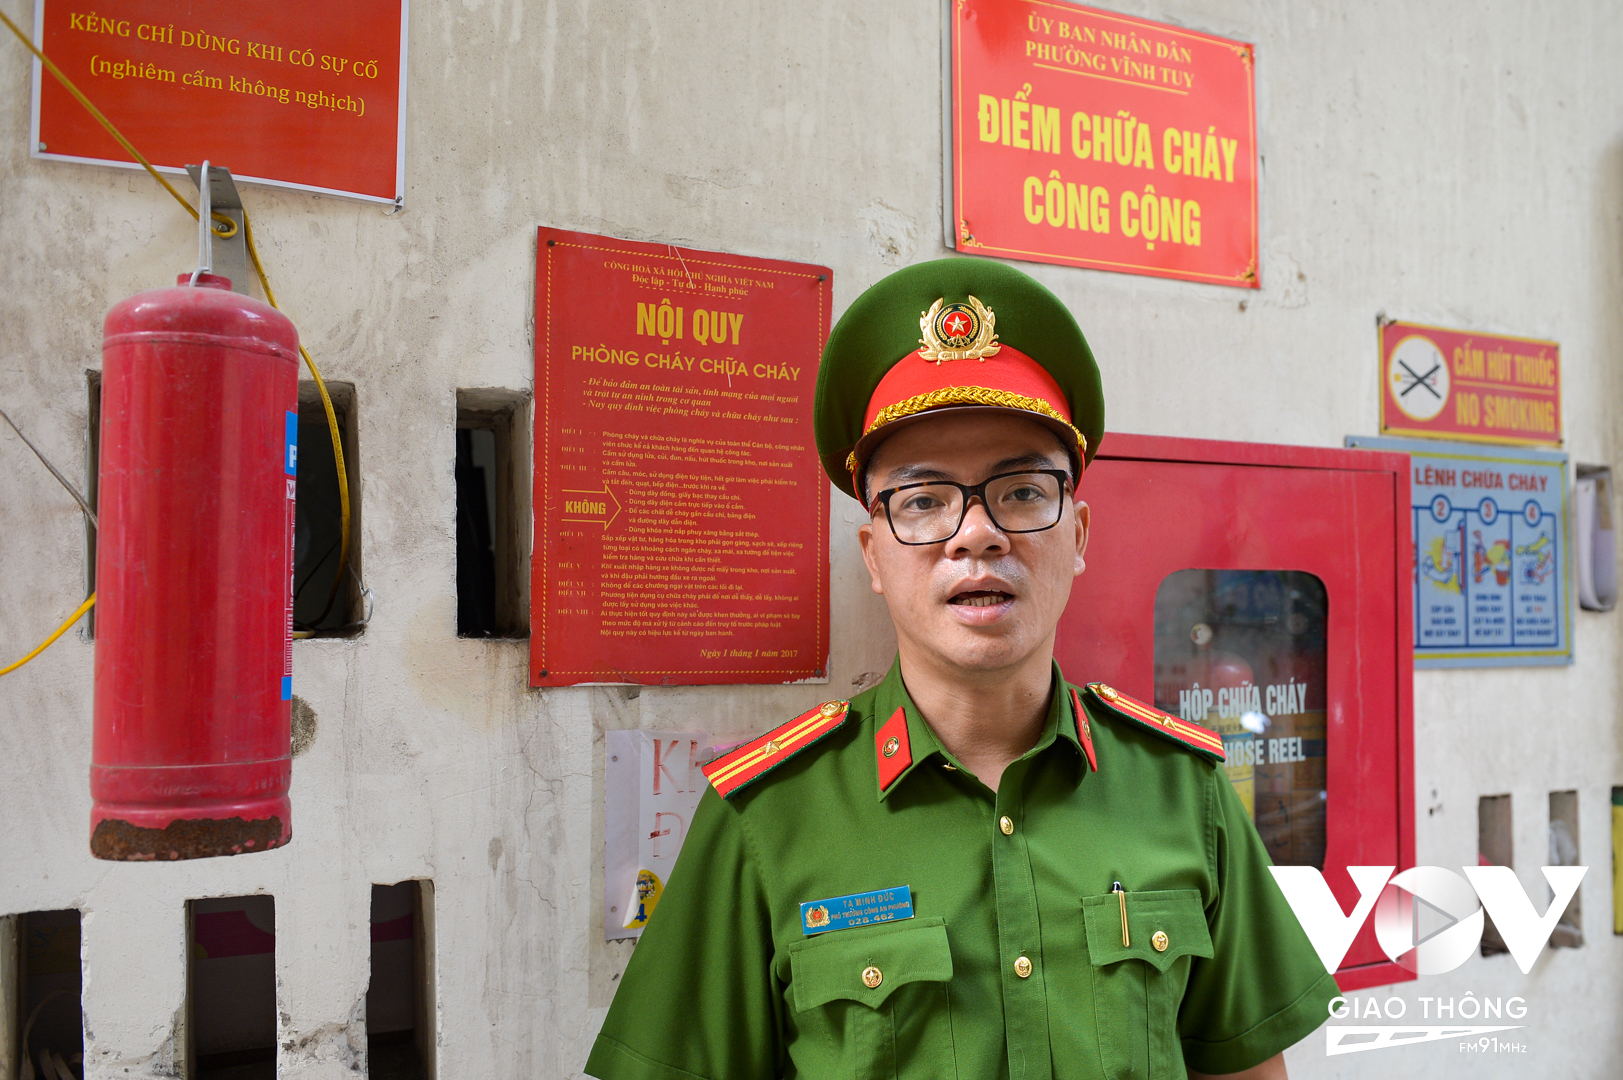 Thiếu tá Tạ Minh Đức – Phó trưởng Công an phường Vĩnh Tuy, quận Hai Bà Trưng, Hà Nội.